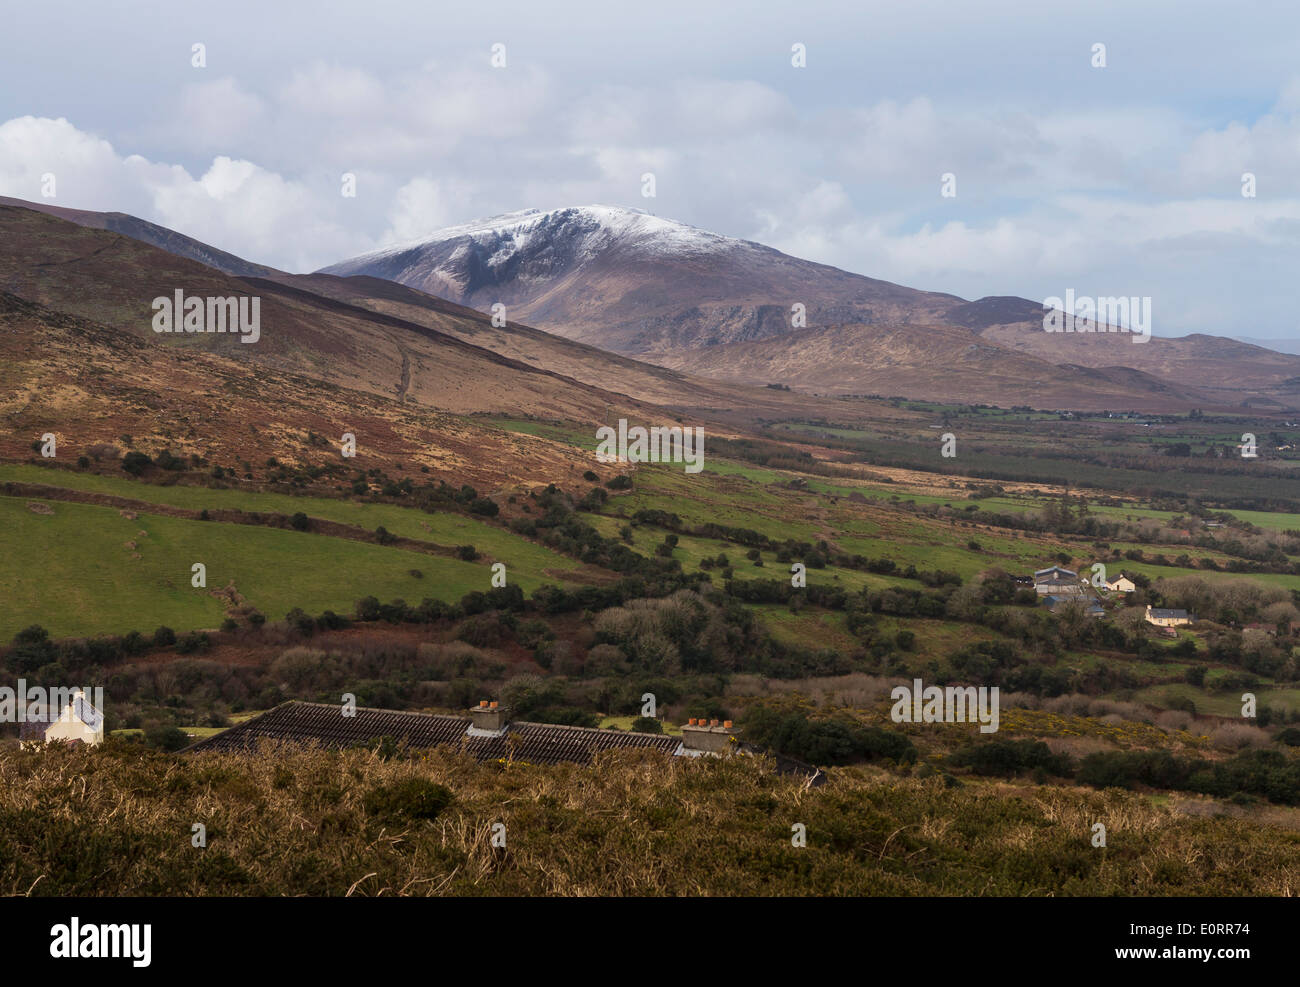 Paisaje de Irlanda en el condado de Kerry, cerca de Dingle en la República de Irlanda, con nieve en las montañas en la distancia Foto de stock